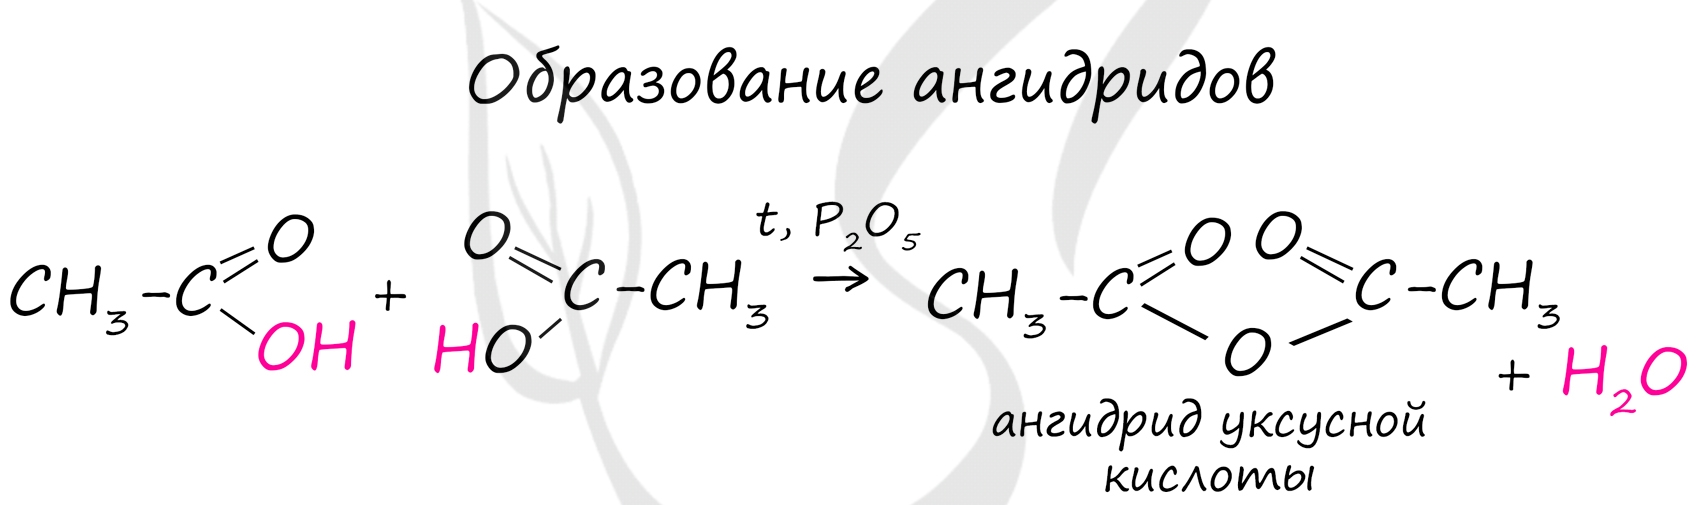 Молярная масса уксусной кислоты (ch3cooh)